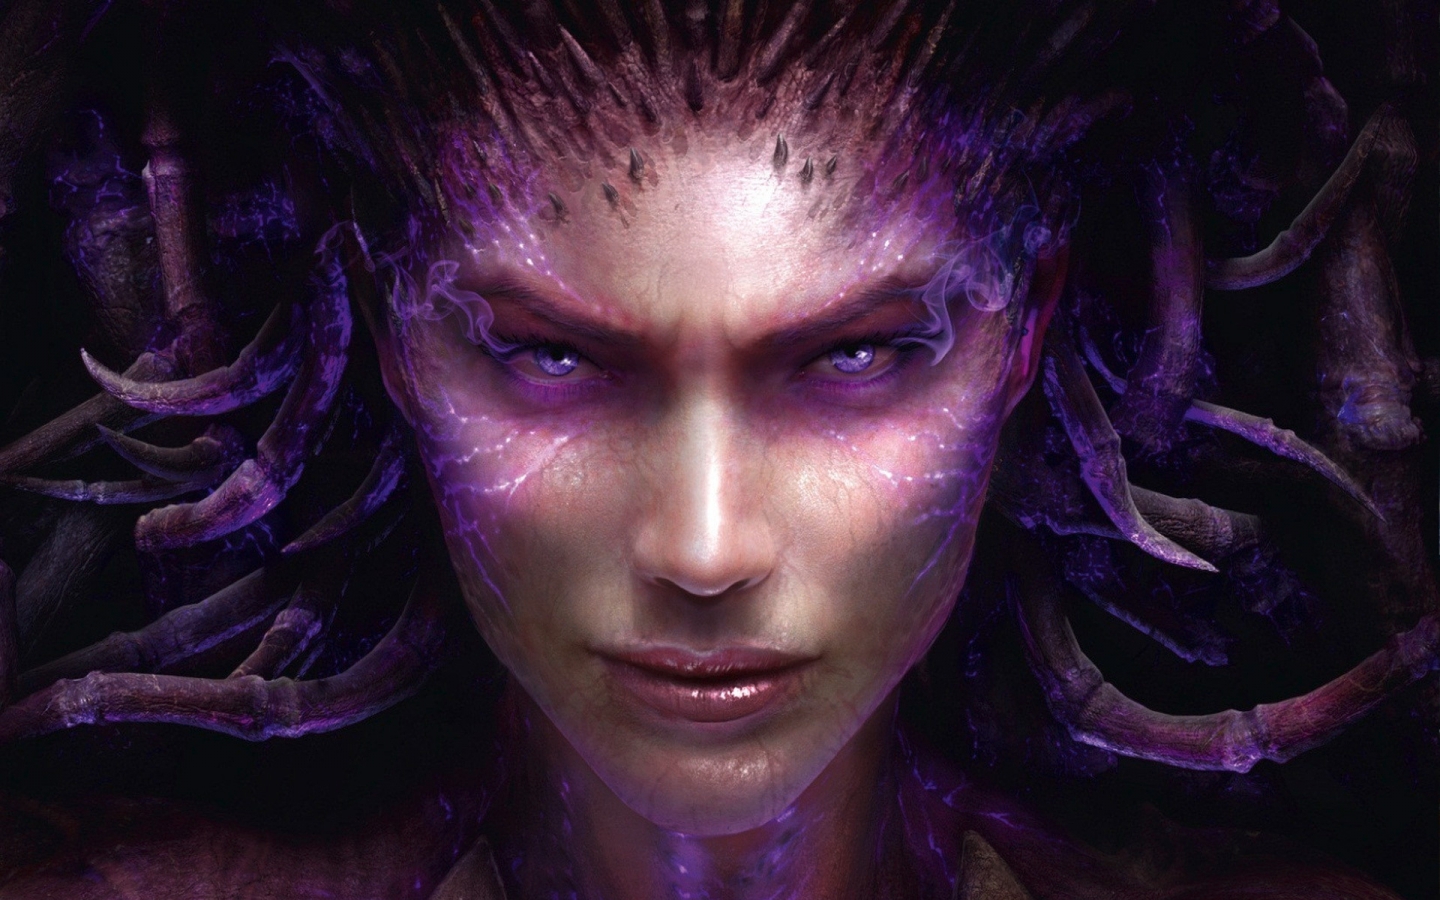 Sarah Kerrigan StarCraft 2 for 1440 x 900 widescreen resolution